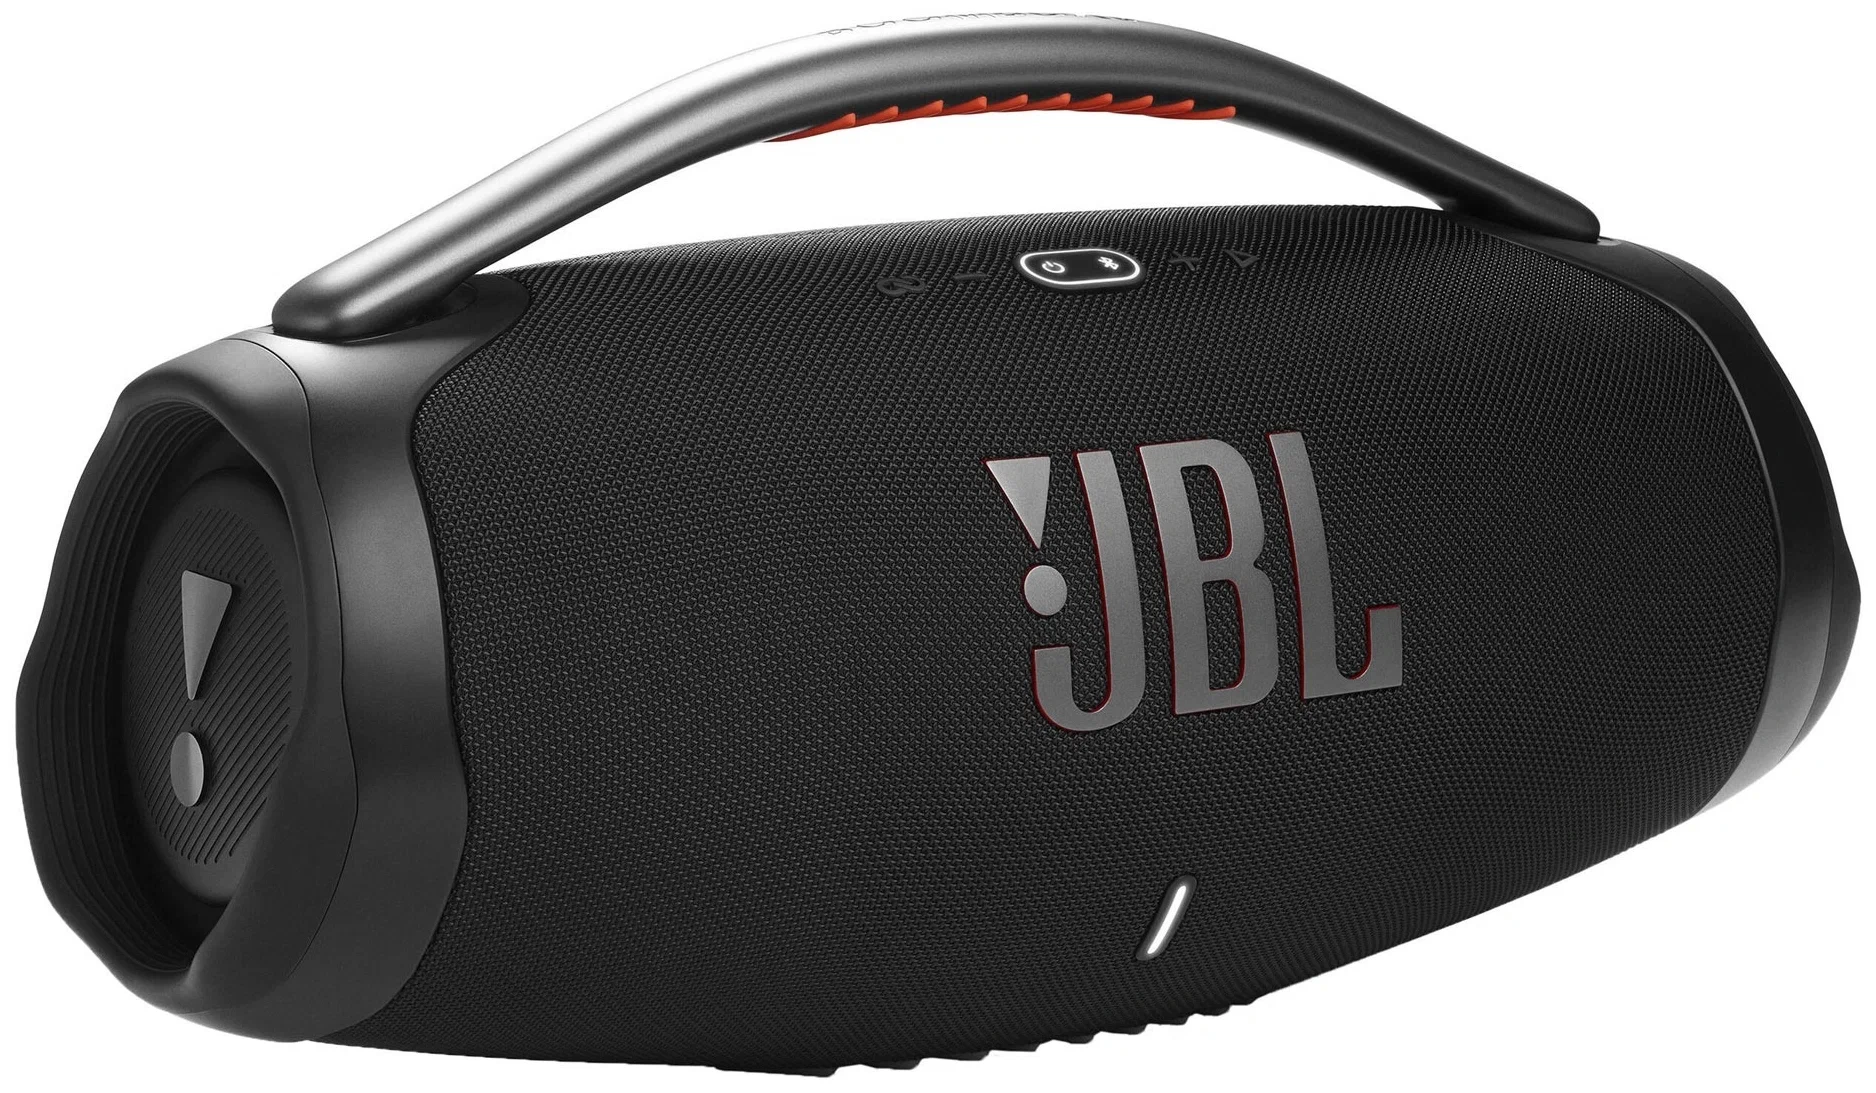 JBL Портативная акустика Boombox3